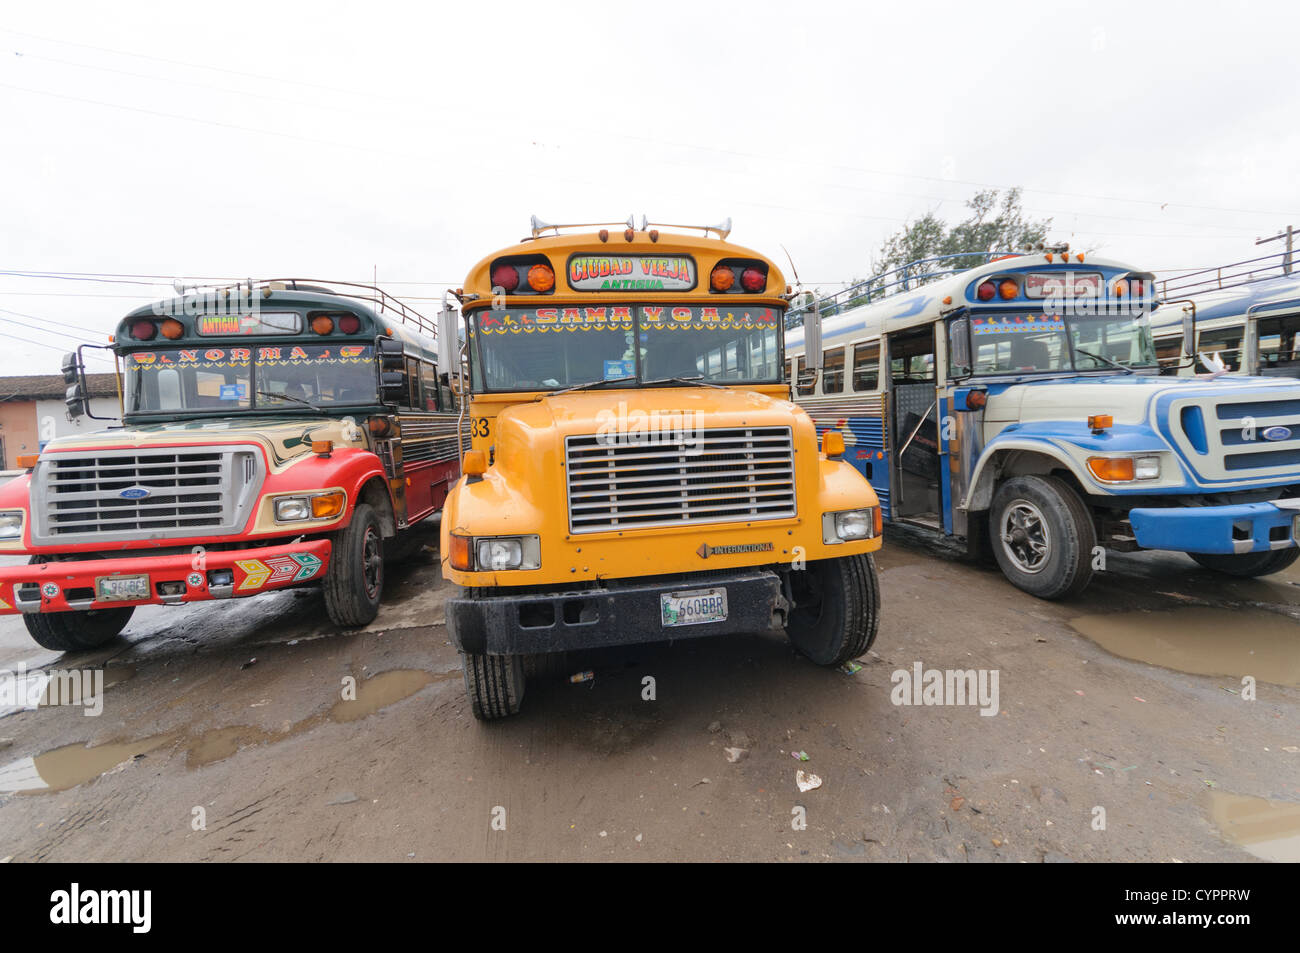 Drei Huhn Busse hinter dem Mercado Municipal (Stadtmarkt) in Antigua, Guatemala. Aus diesem umfangreichen zentralen Busbahnhof strahlenförmig der Routen in Guatemala. Oft bunt bemalt, die Huhn-Busse sind nachgerüsteten amerikanische Schulbusse und bieten ein günstiges Transportmittel im ganzen Land. Stockfoto